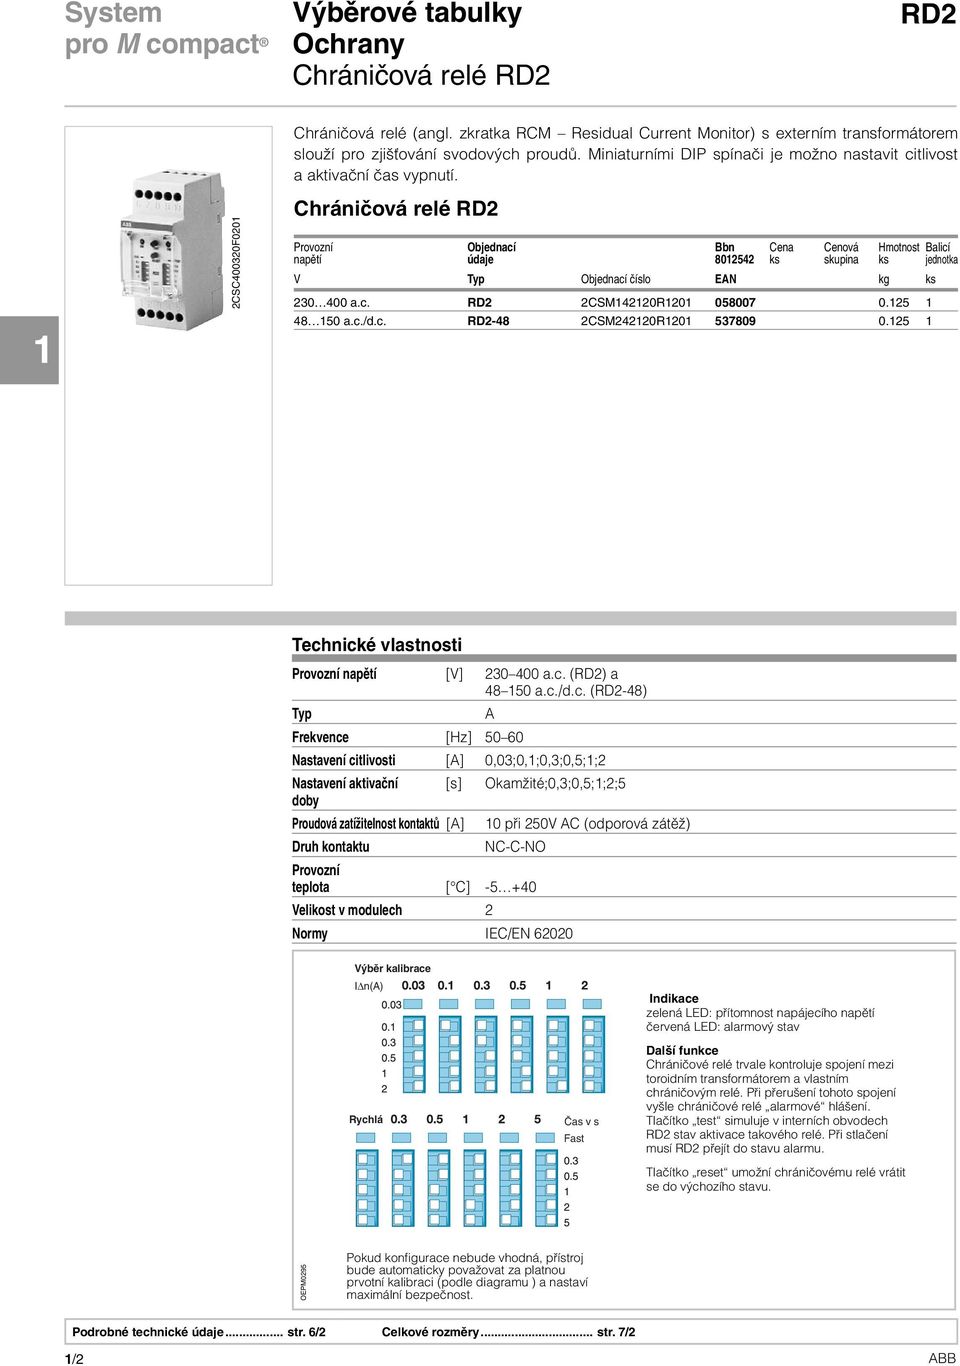 Chráničová relé RD2 Provozní Objednací Bbn Cena Cenová Hmotnost Balicí napětí údaje 8012542 ks skupina ks jednotka V Typ Objednací číslo EAN kg ks 230 400 a.c. RD2 2CSM142120R1201 058007 0.